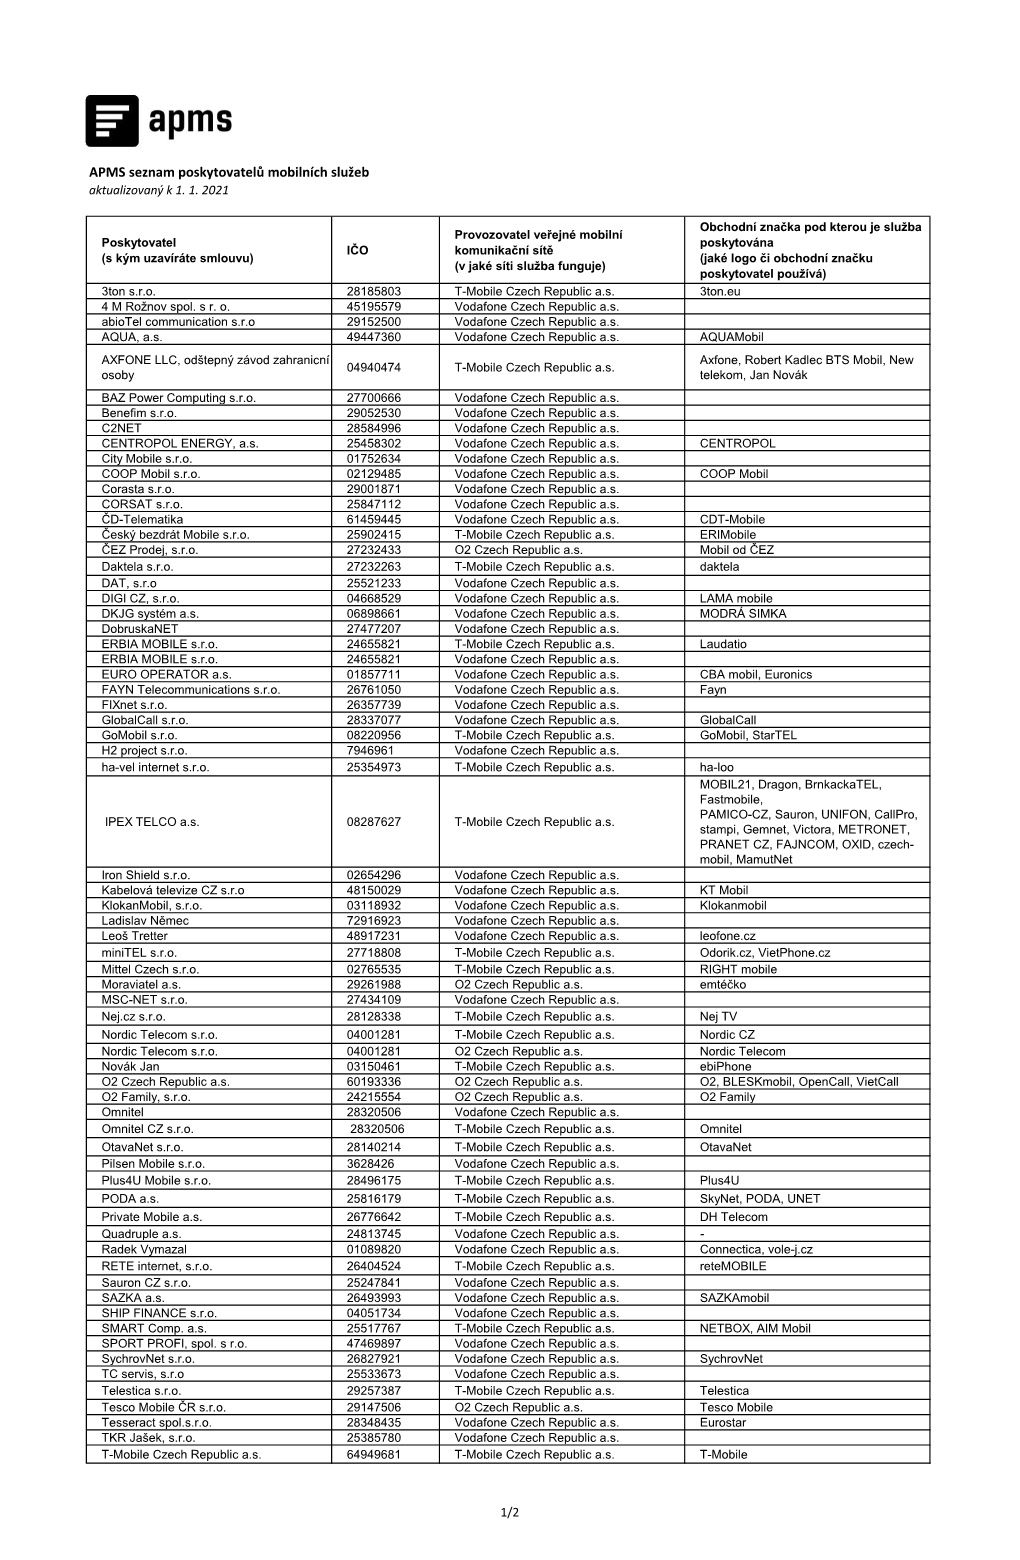 APMS Seznam Poskytovatelů Mobilních Služeb Aktualizovaný K 1